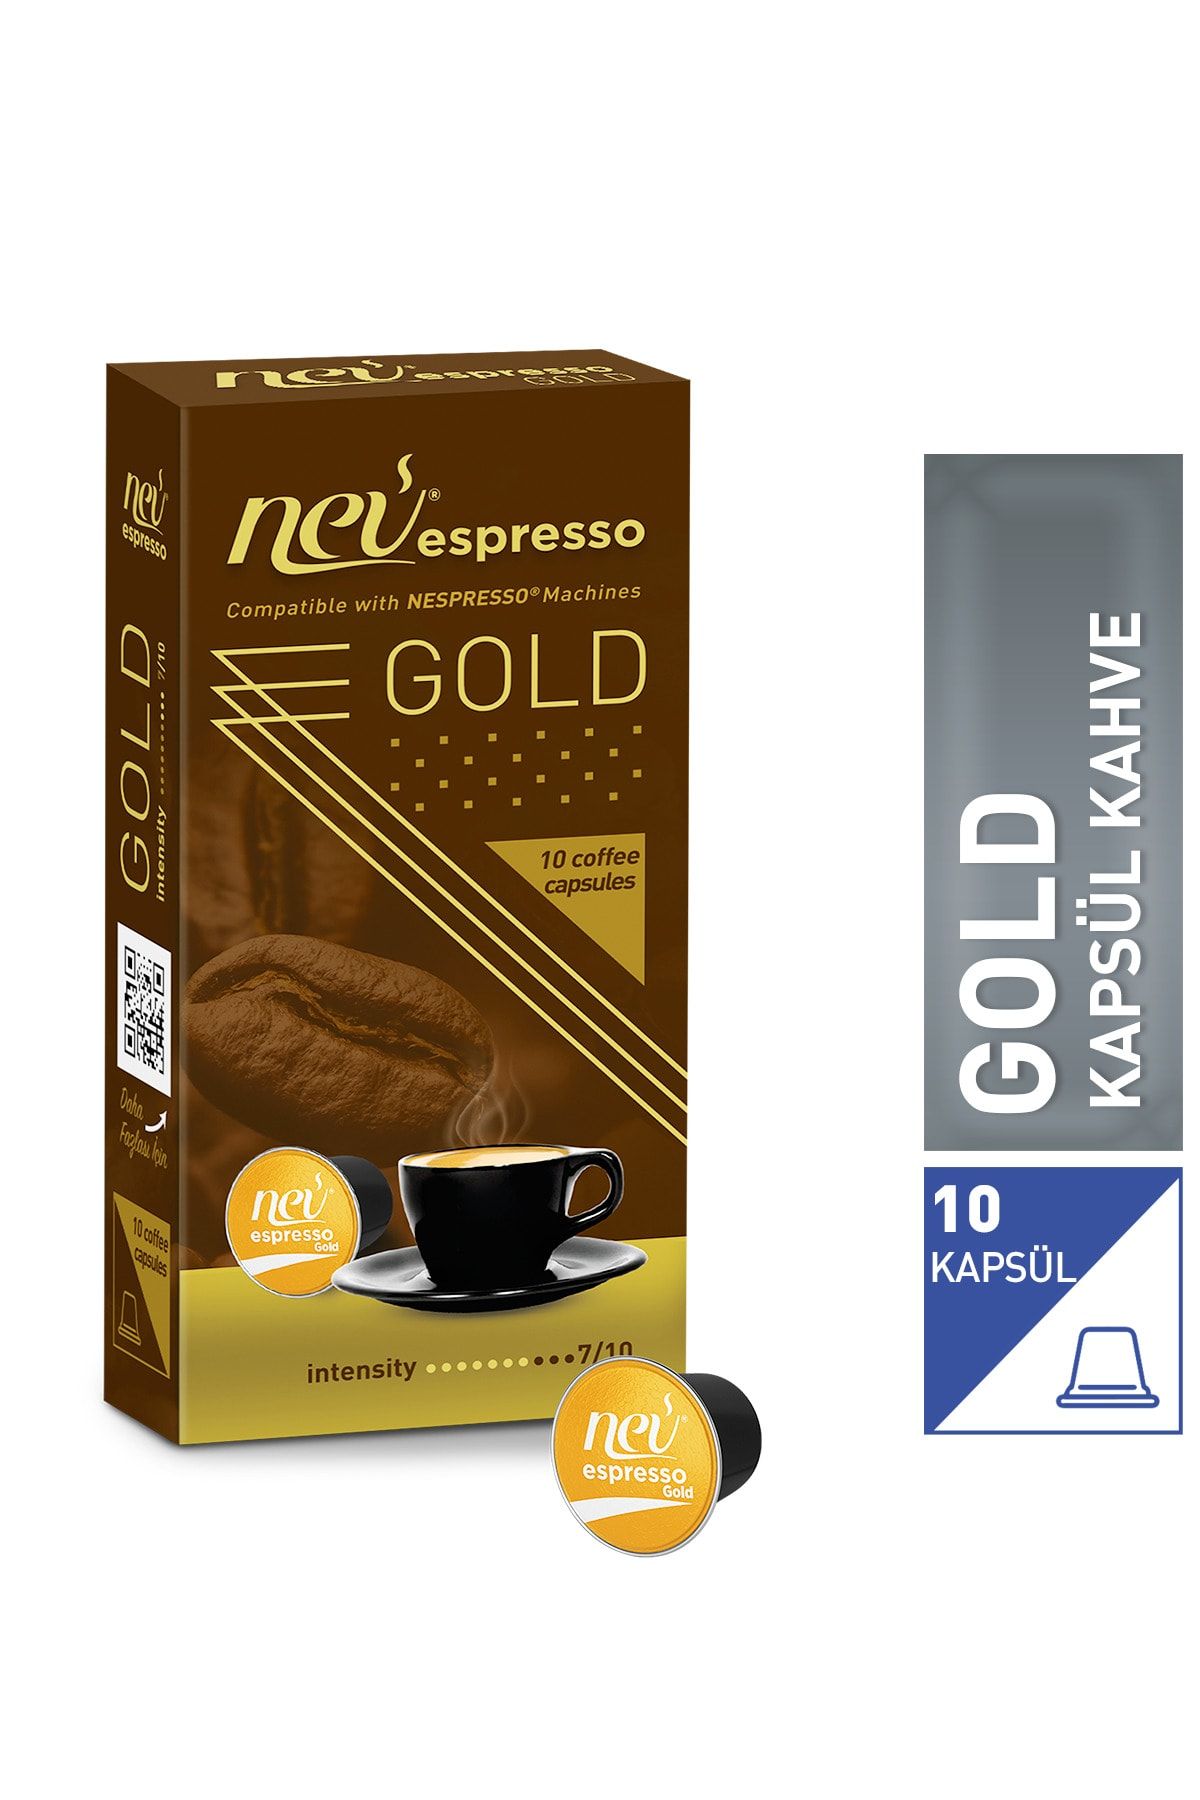 nev espresso Gold Kapsül Kahve 1 Kutu Nespresso Uyumlu